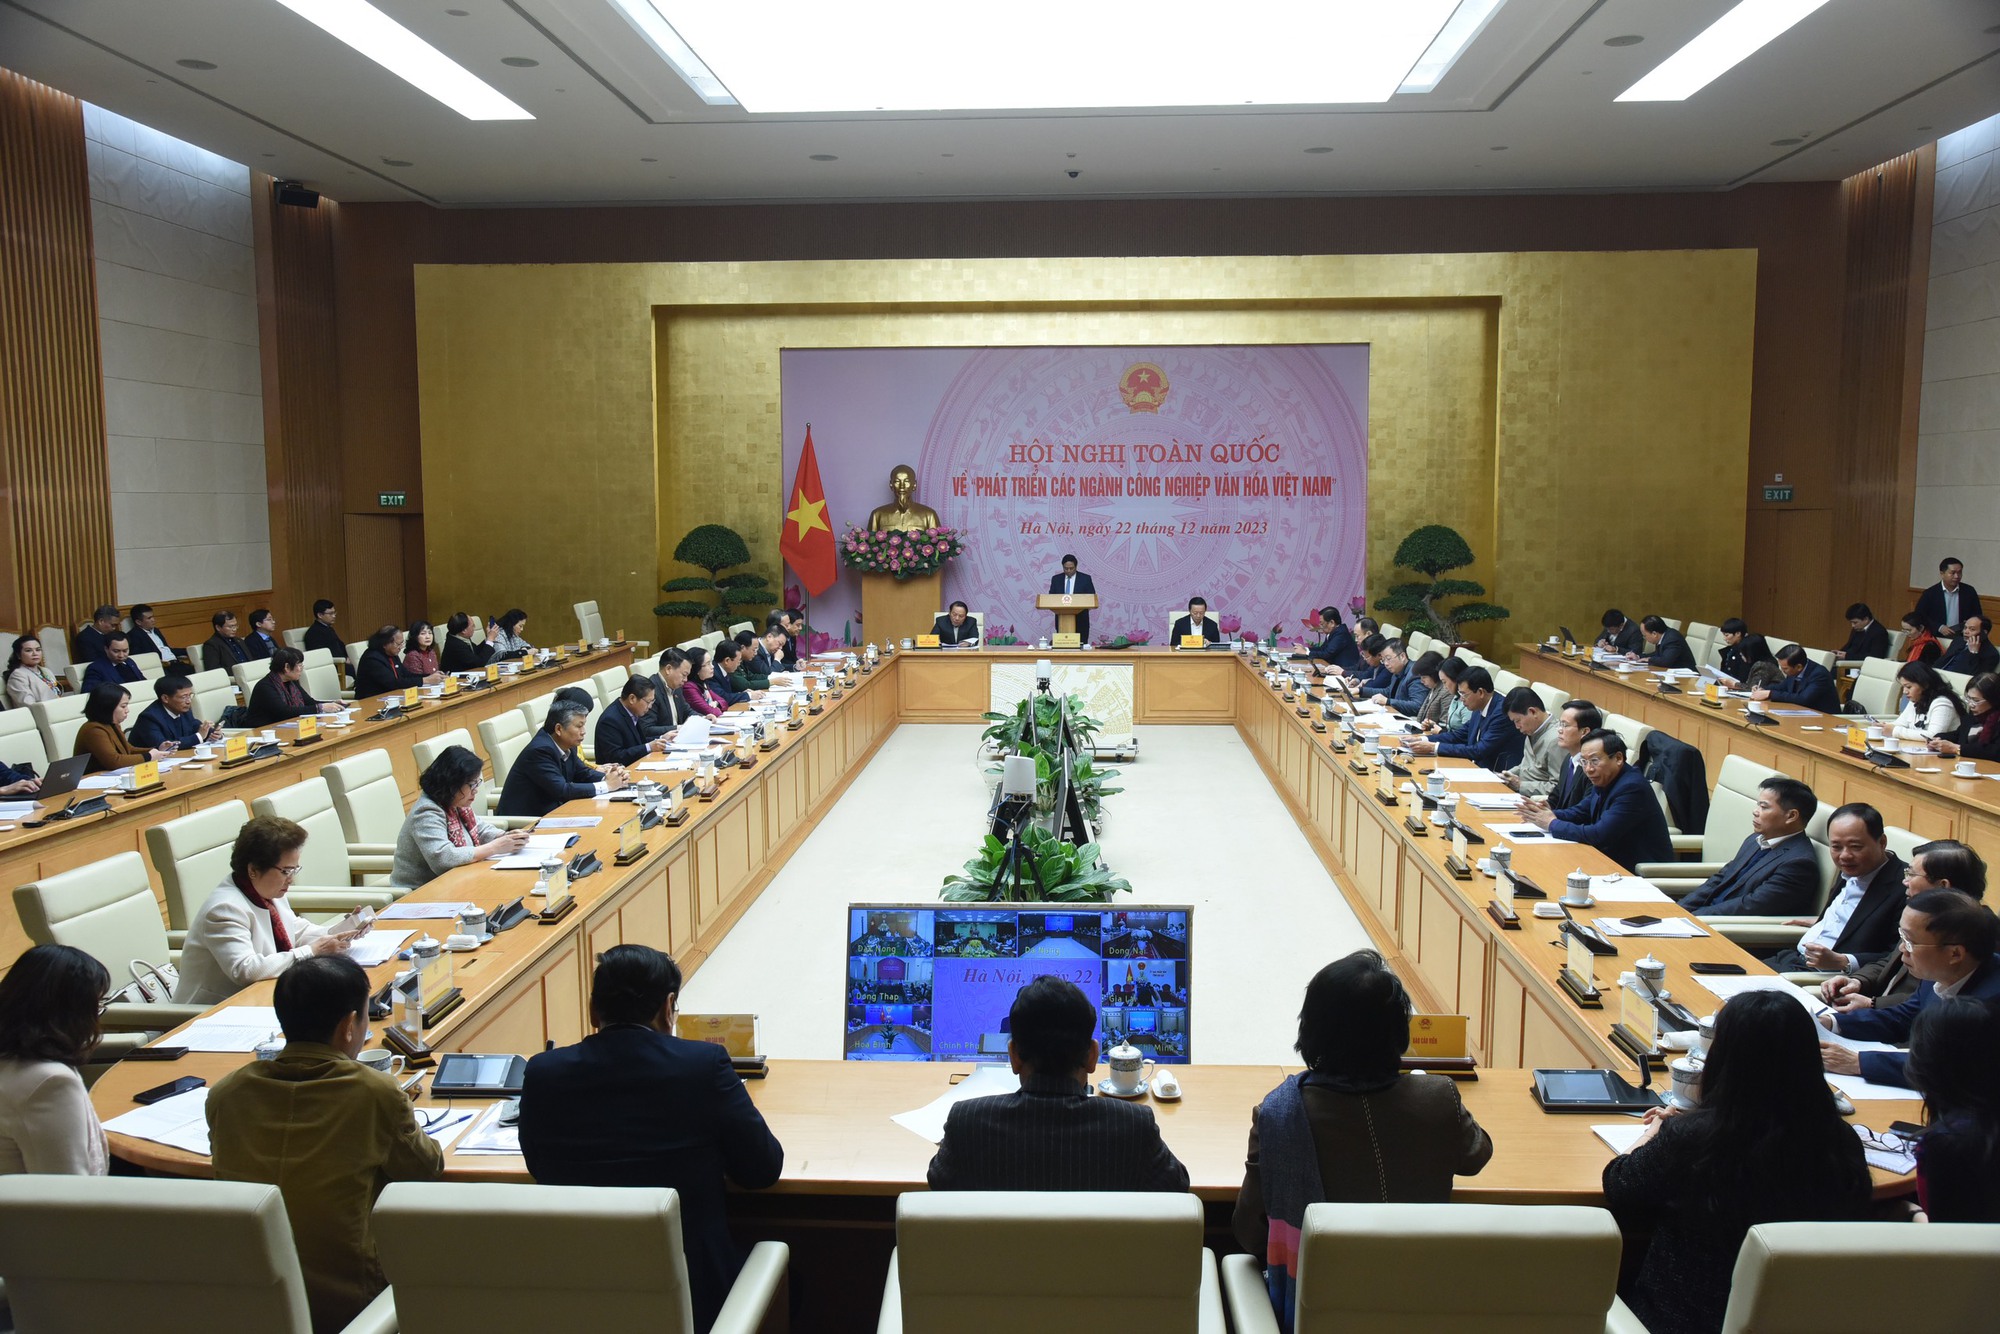 Bộ trưởng Nguyễn Văn Hùng: Nguồn lực đầu tư cho các ngành công nghiệp văn hóa còn dàn trải, chưa có trọng tâm, trọng điểm - Ảnh 1.